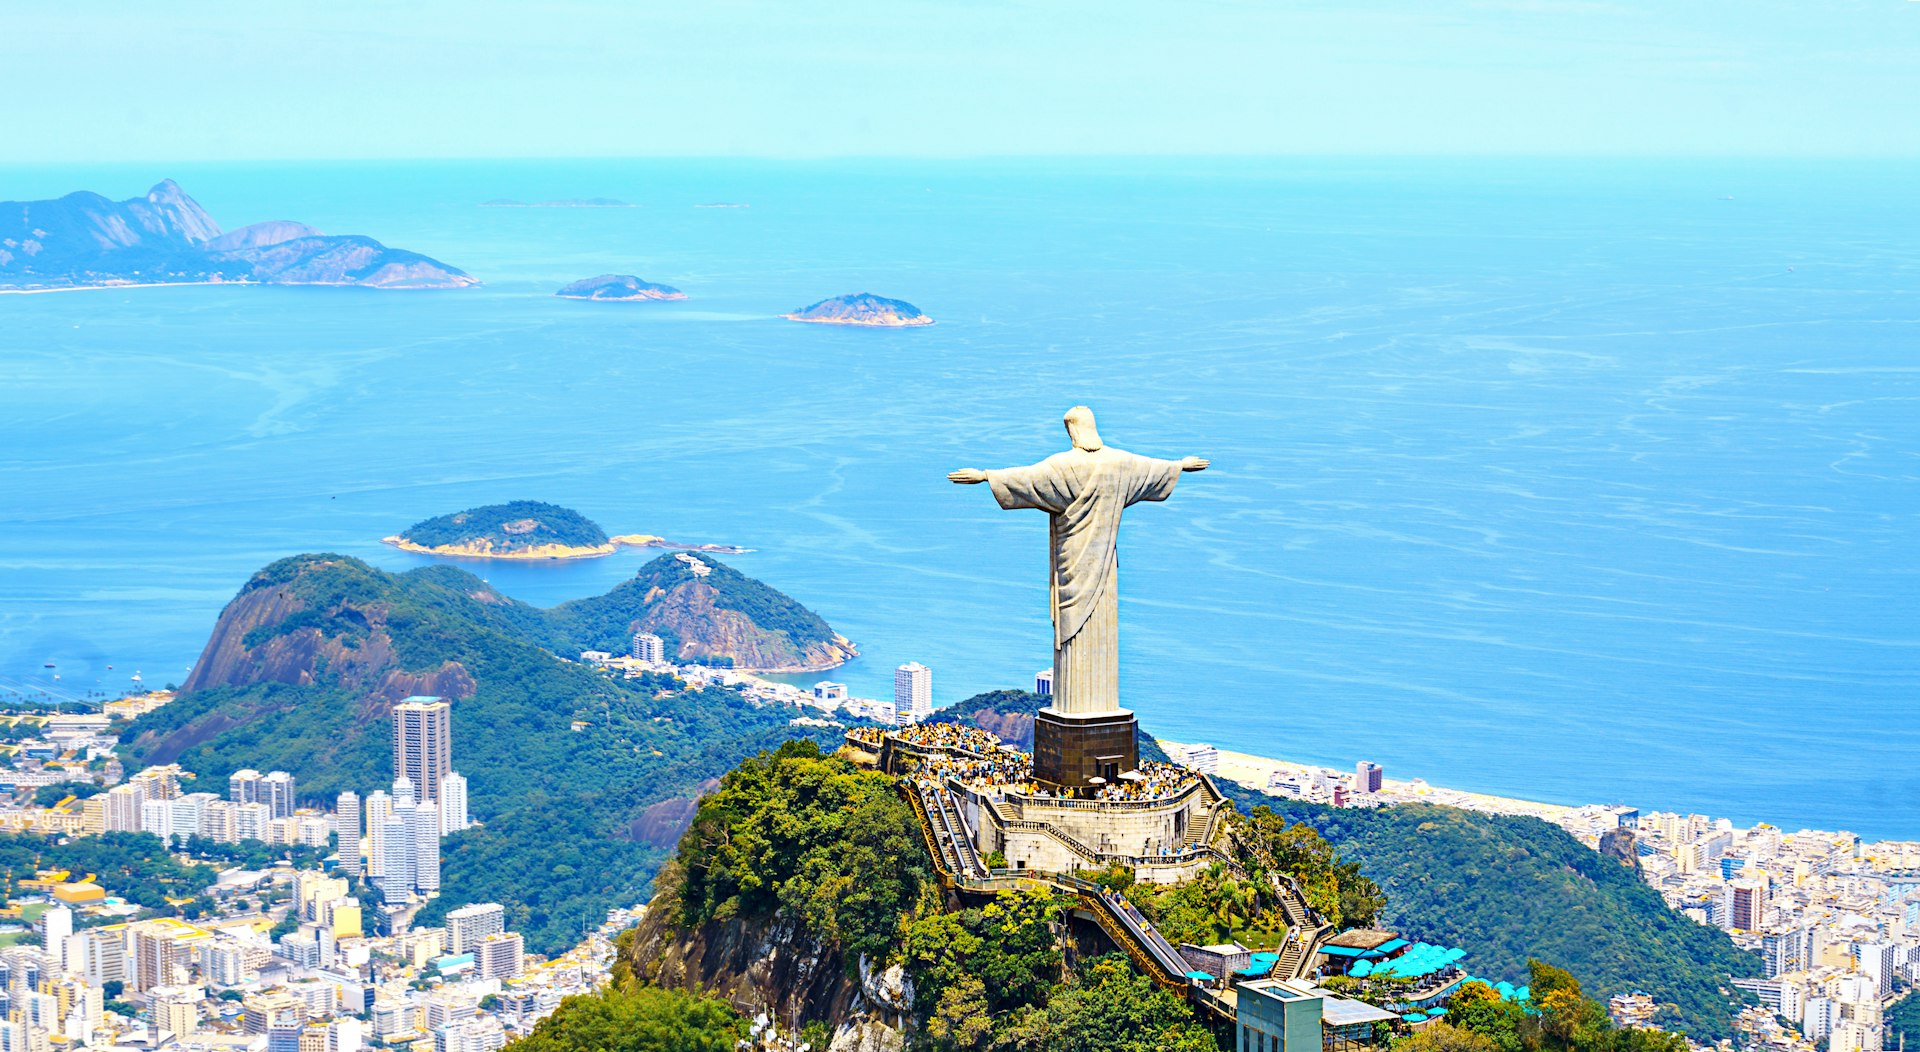 Mbaheblogjpixpt ブラジル 観光 地 ブラジル 観光 地 ランキング